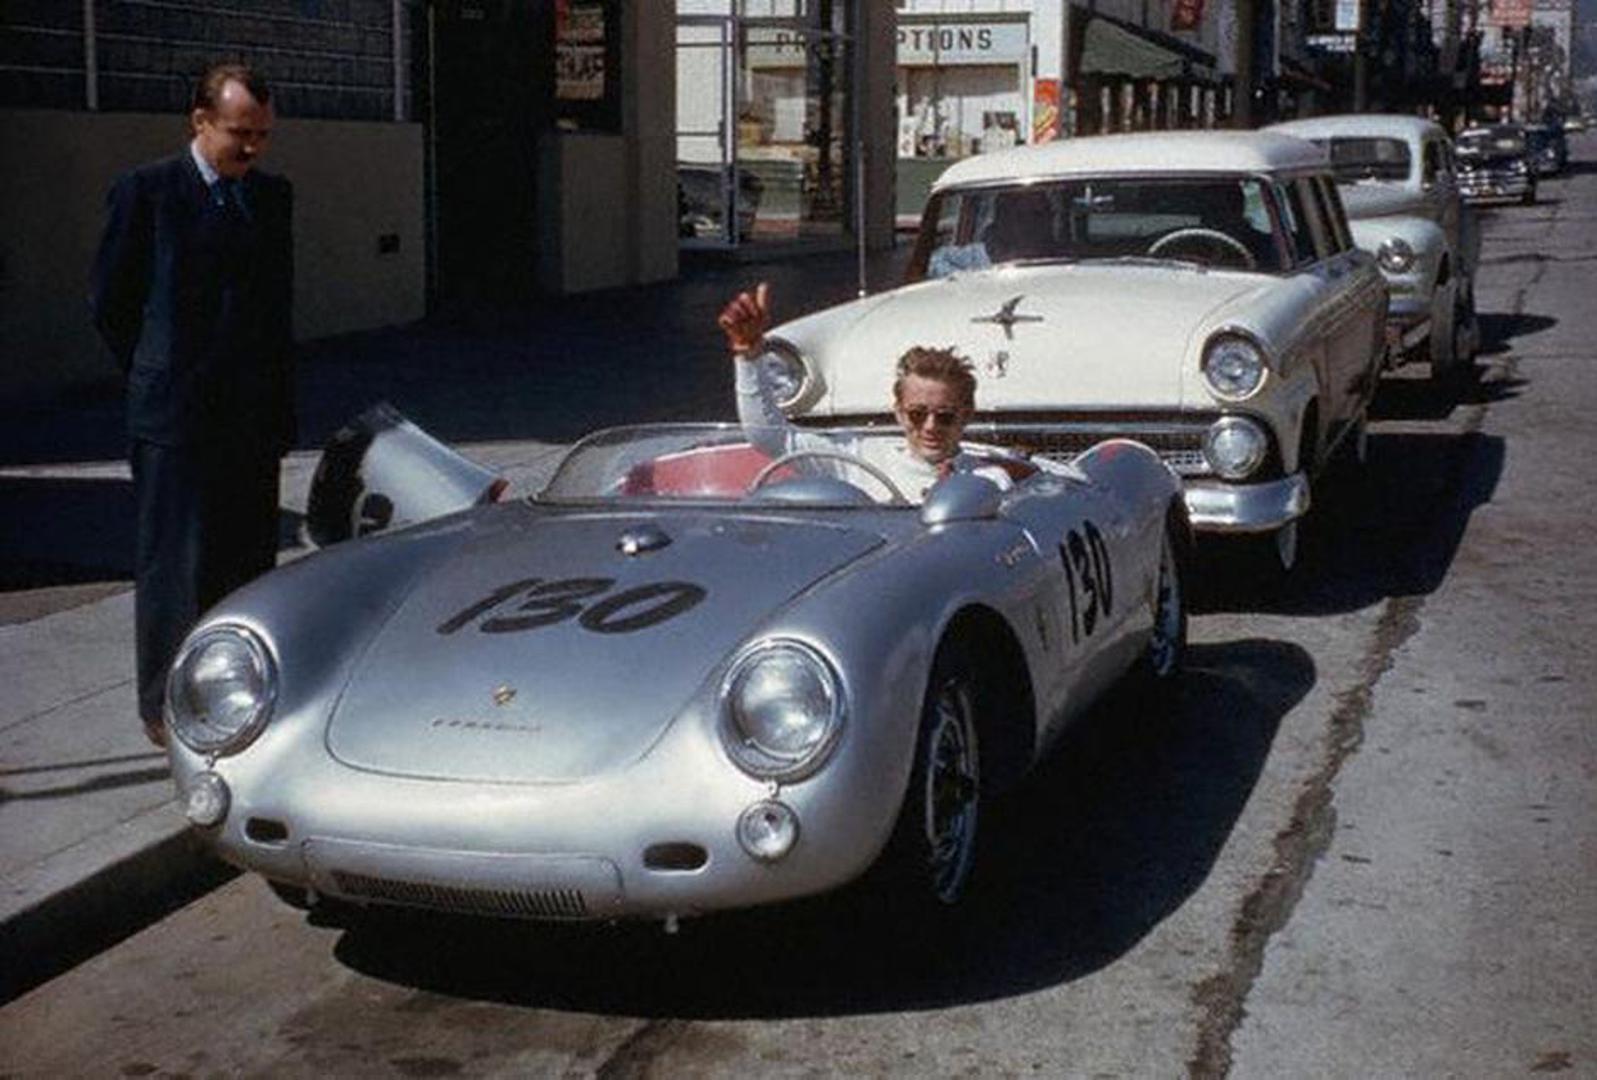 Slavni je buntovnik i glumac poginuo u fatalnoj prometnoj nesreći 30. rujna 1955. Imao je samo 24 godine i vozio je novi Porsche Spyder kojeg je od milja zvao "mali gad". Mnogi su nakon nesreće smatrali da je automobil uklet.